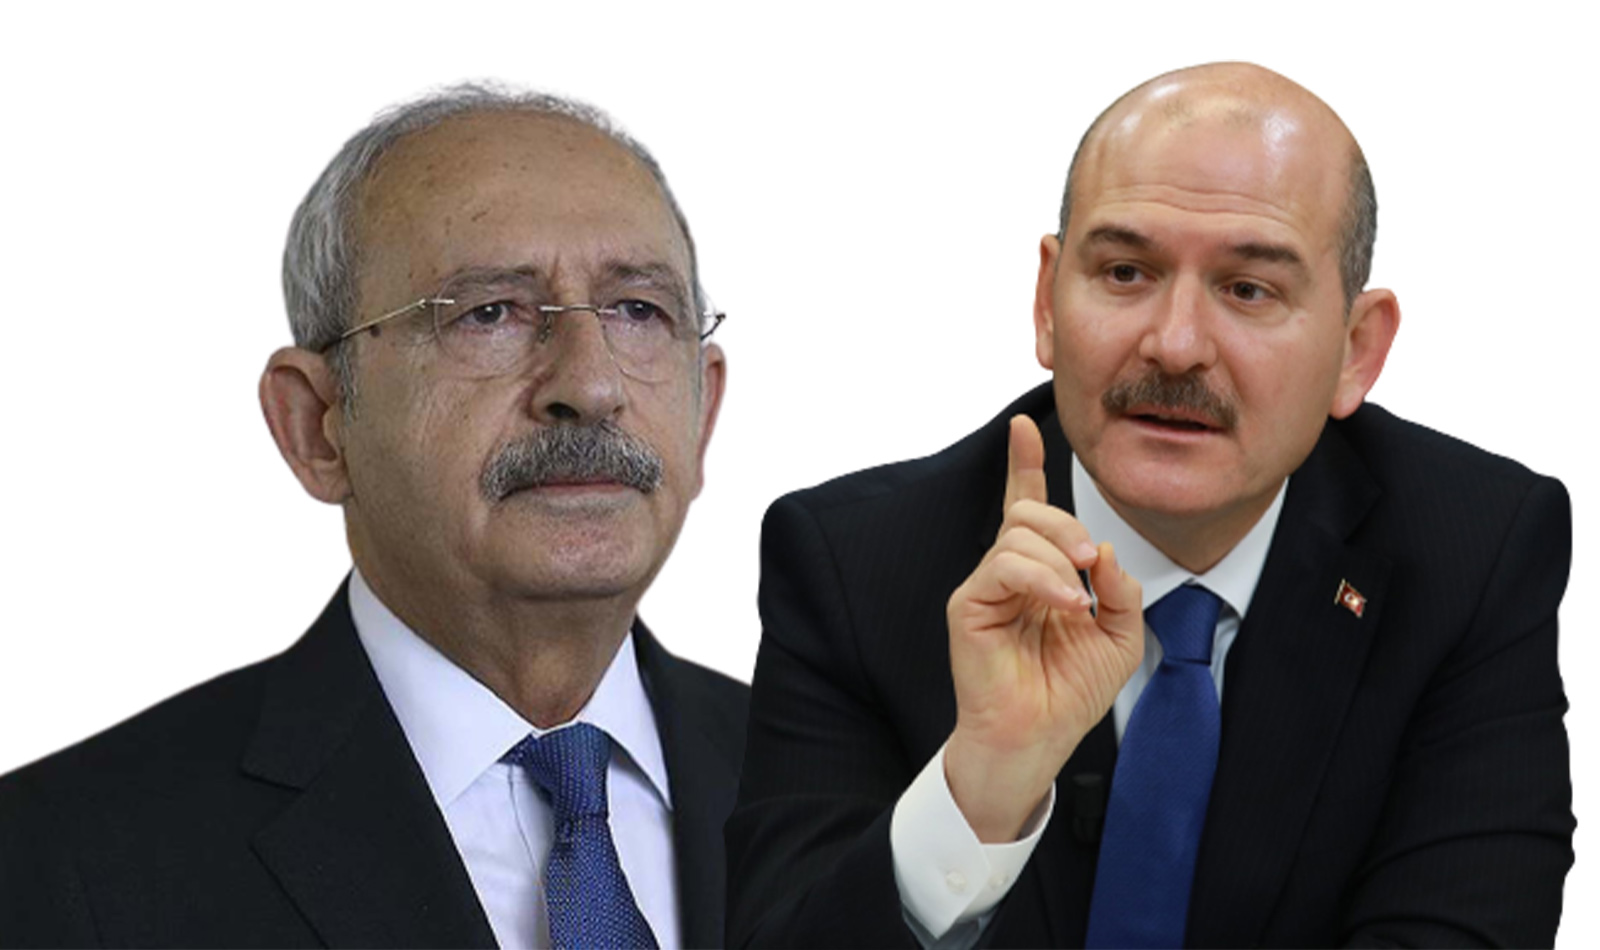 Kılıçdaroğlu, Terörle mücadele yeniden şekillendirilmeli dedi, Bakan Soylu'dan cevap gecikmedi: Sana bunları kim söyletiyor? 